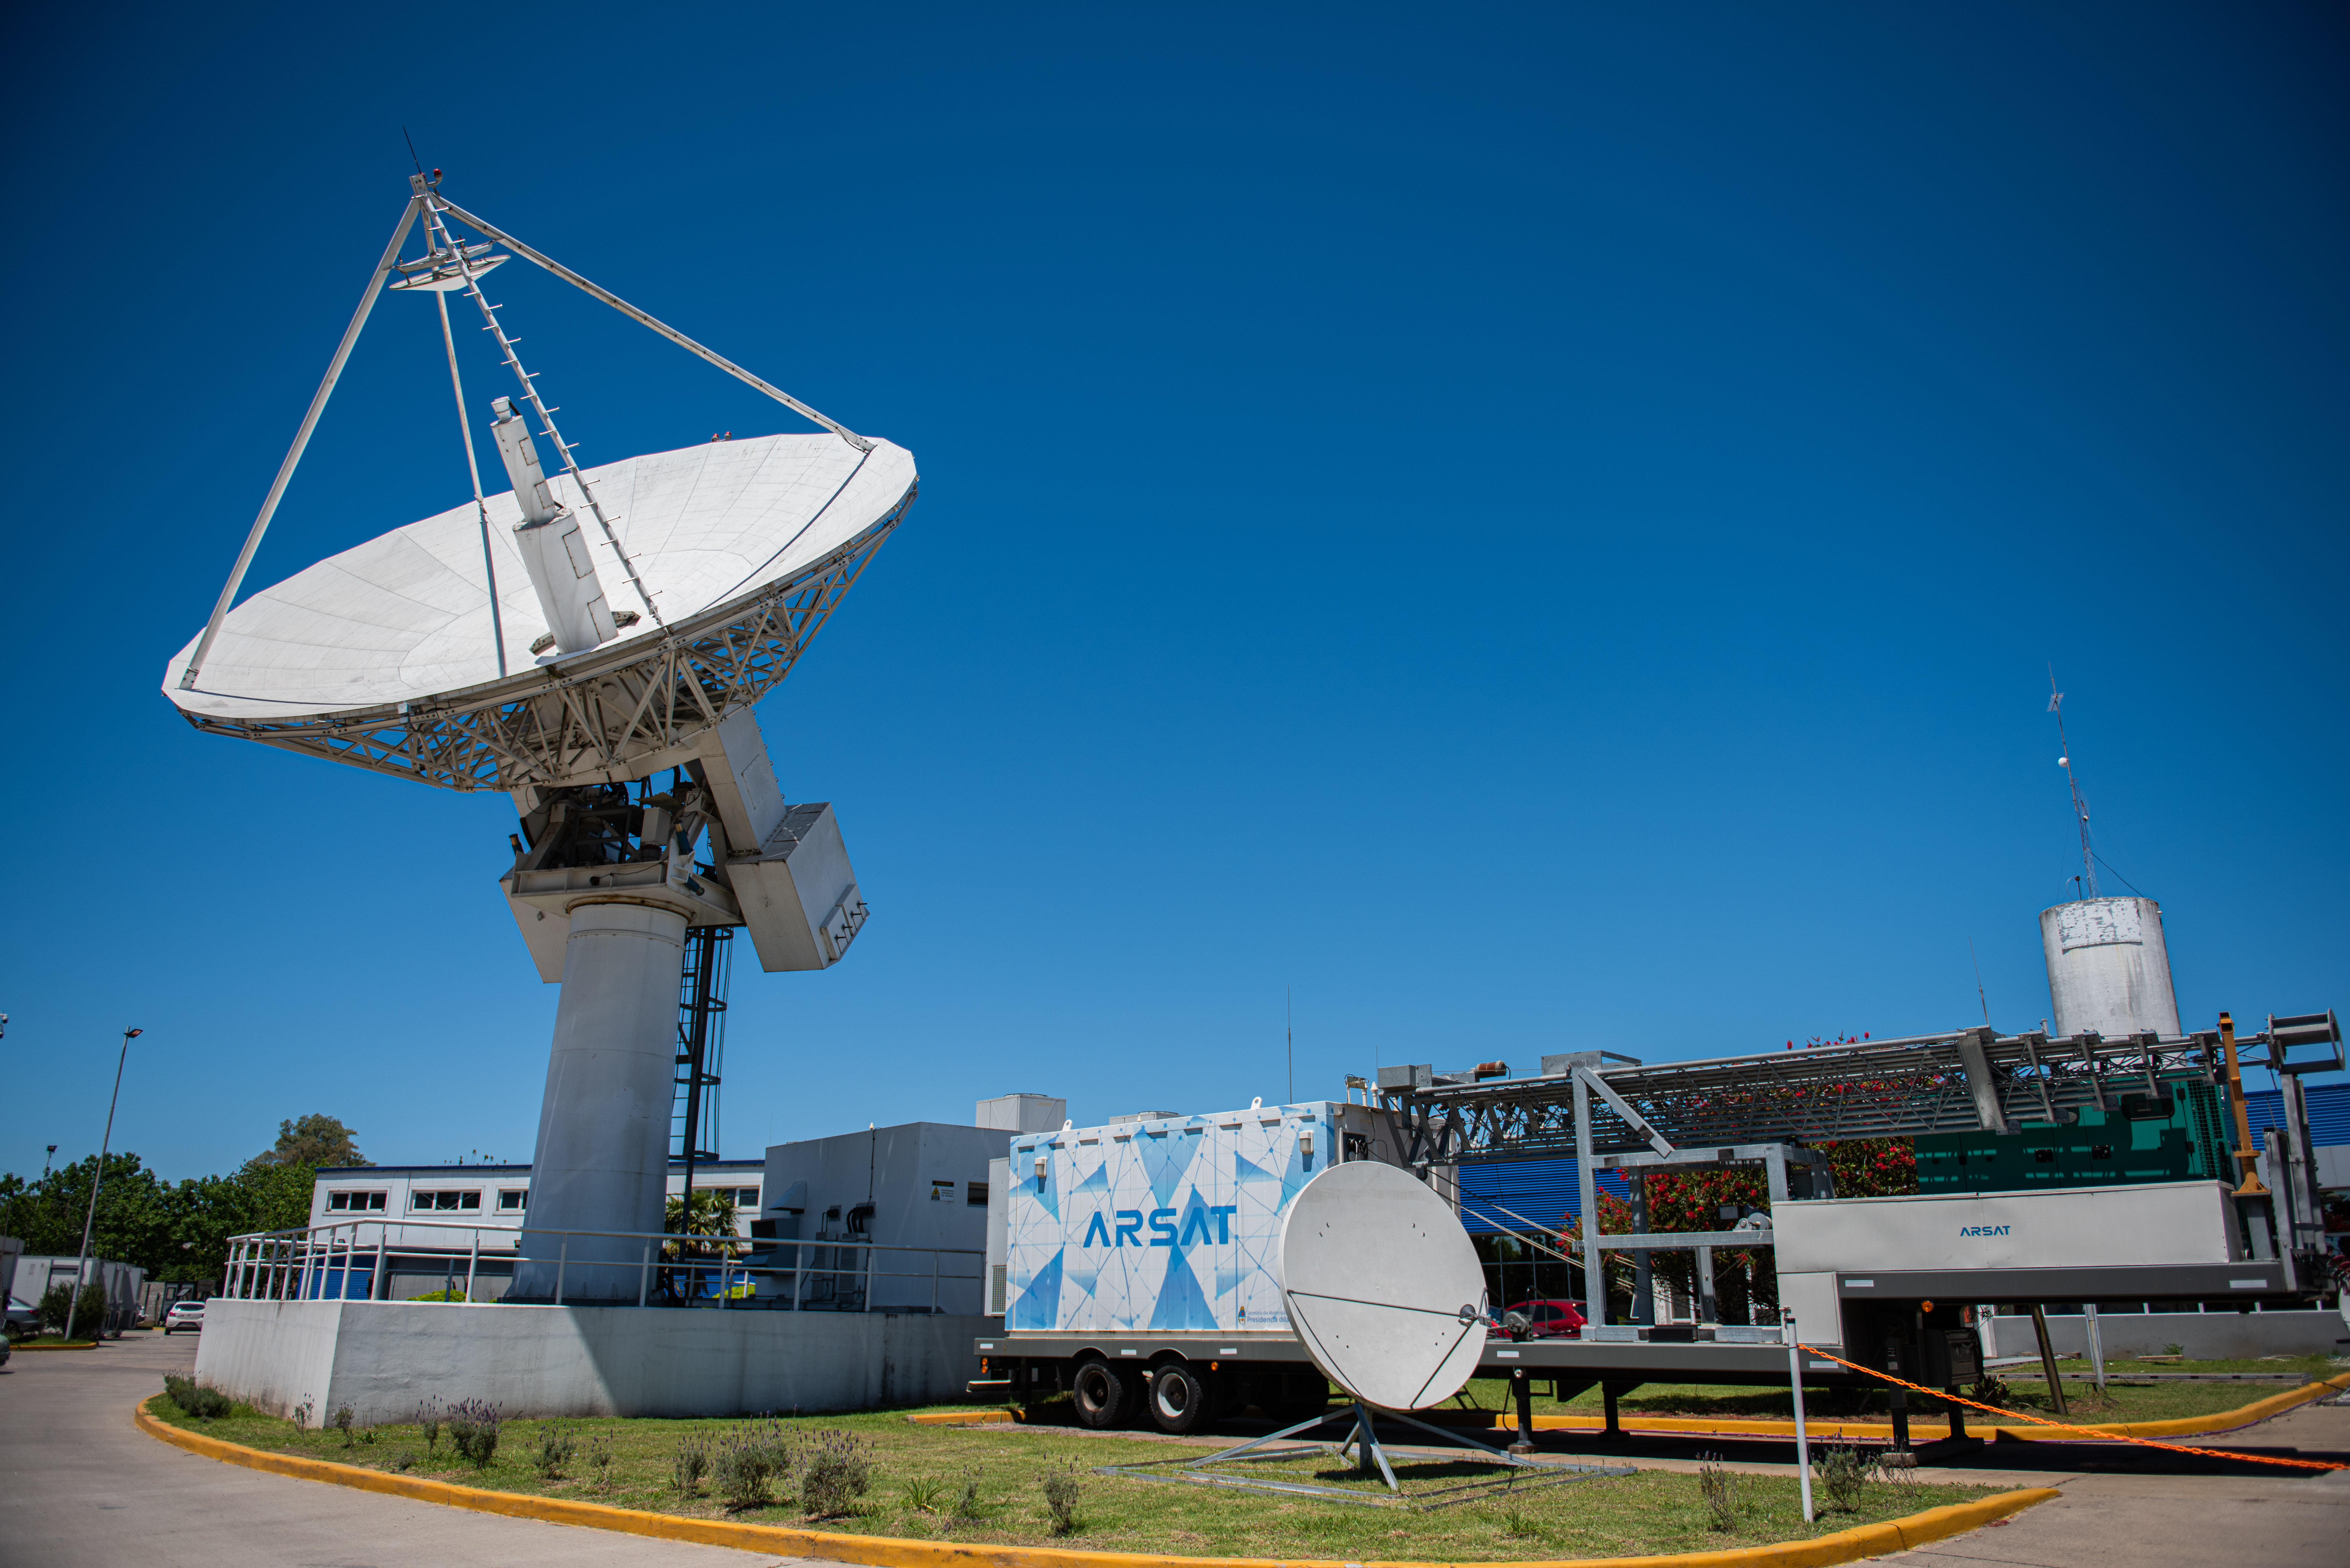 ARSAT es una empresa de telecomunicaciones del Estado Argentino que brinda servicios de transmisión de datos, telefonía y televisión por medio de infraestructura terrestre, aérea y espacial